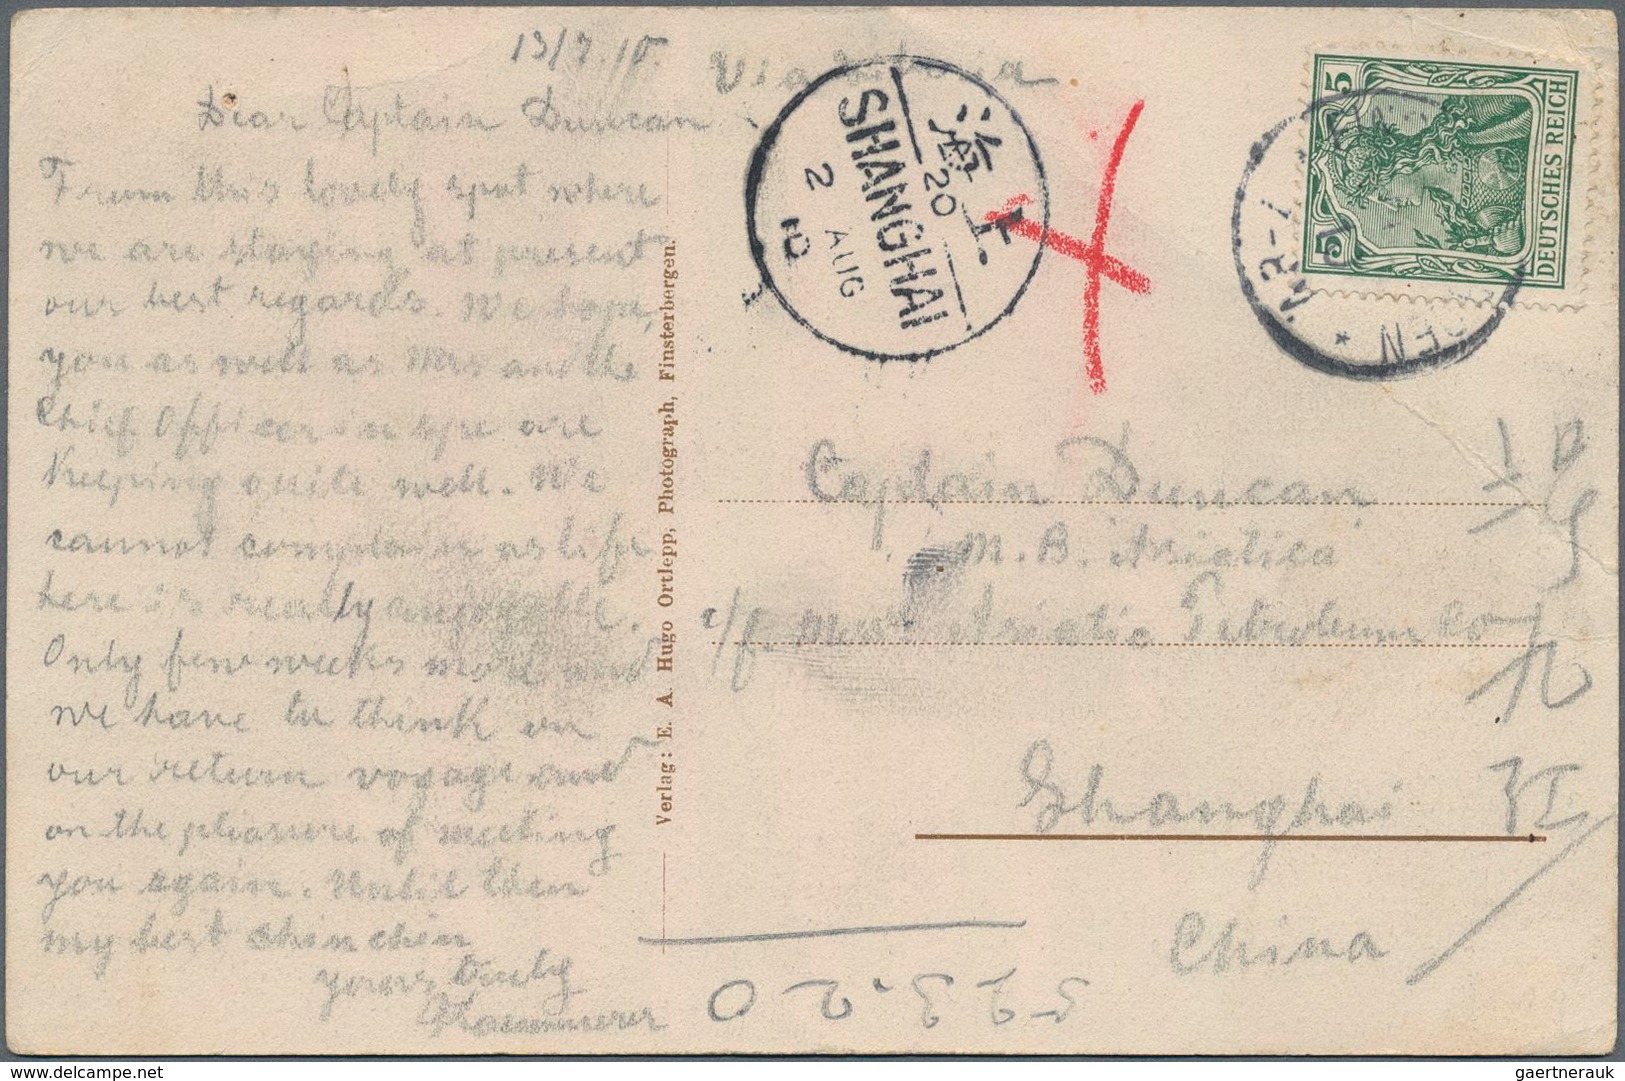 Deutsche Post in China: 1900/1912, kleine Partie von neun Belegen "Incoming Mail" aus Deutschland (6